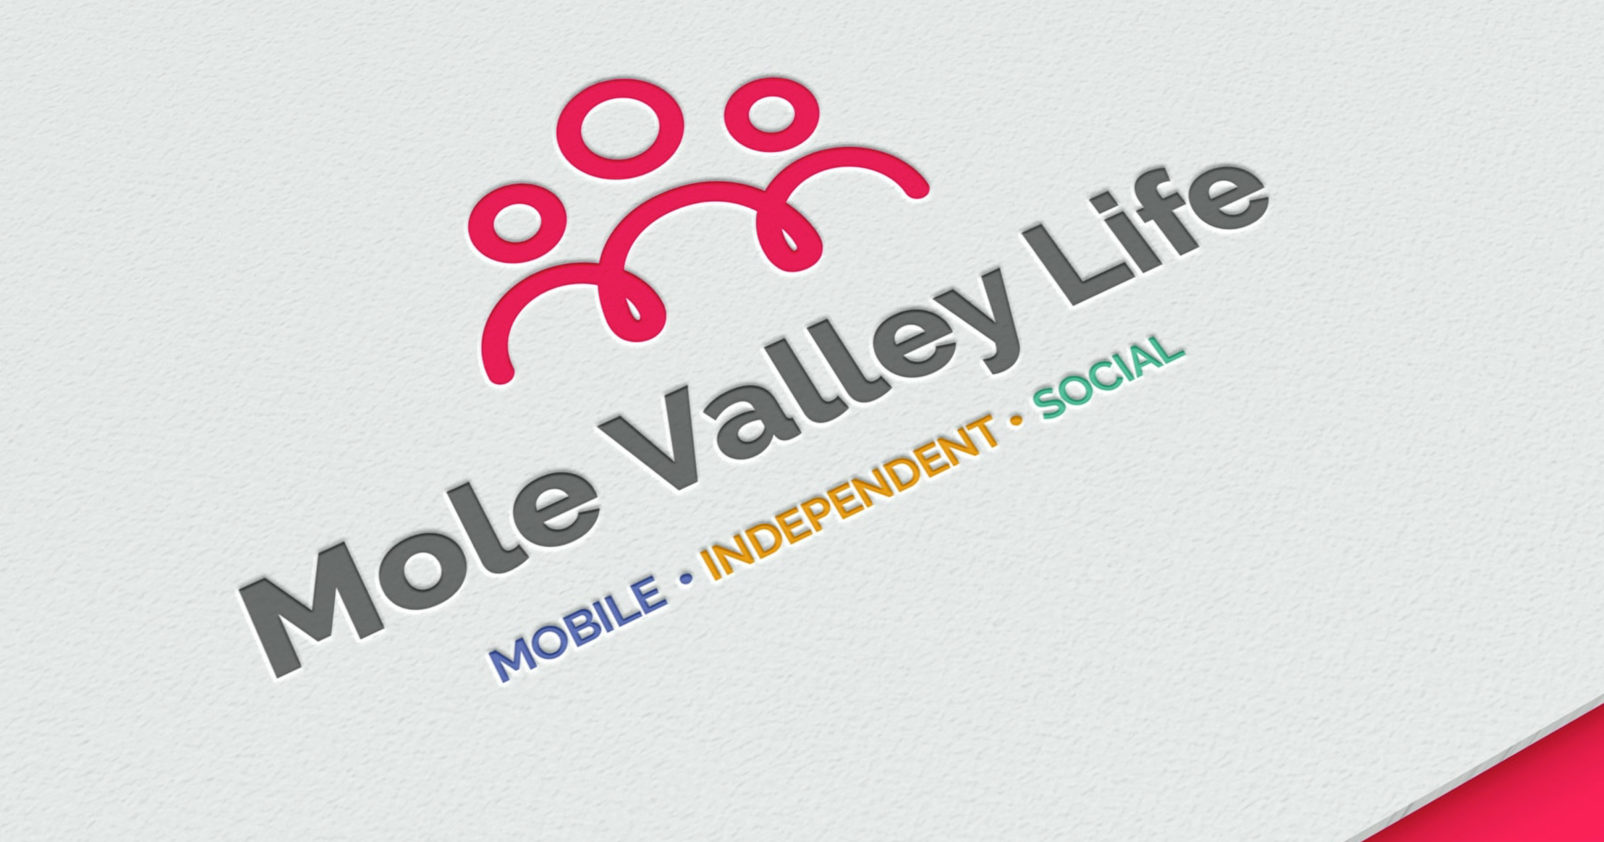 mole-valley-logo-design